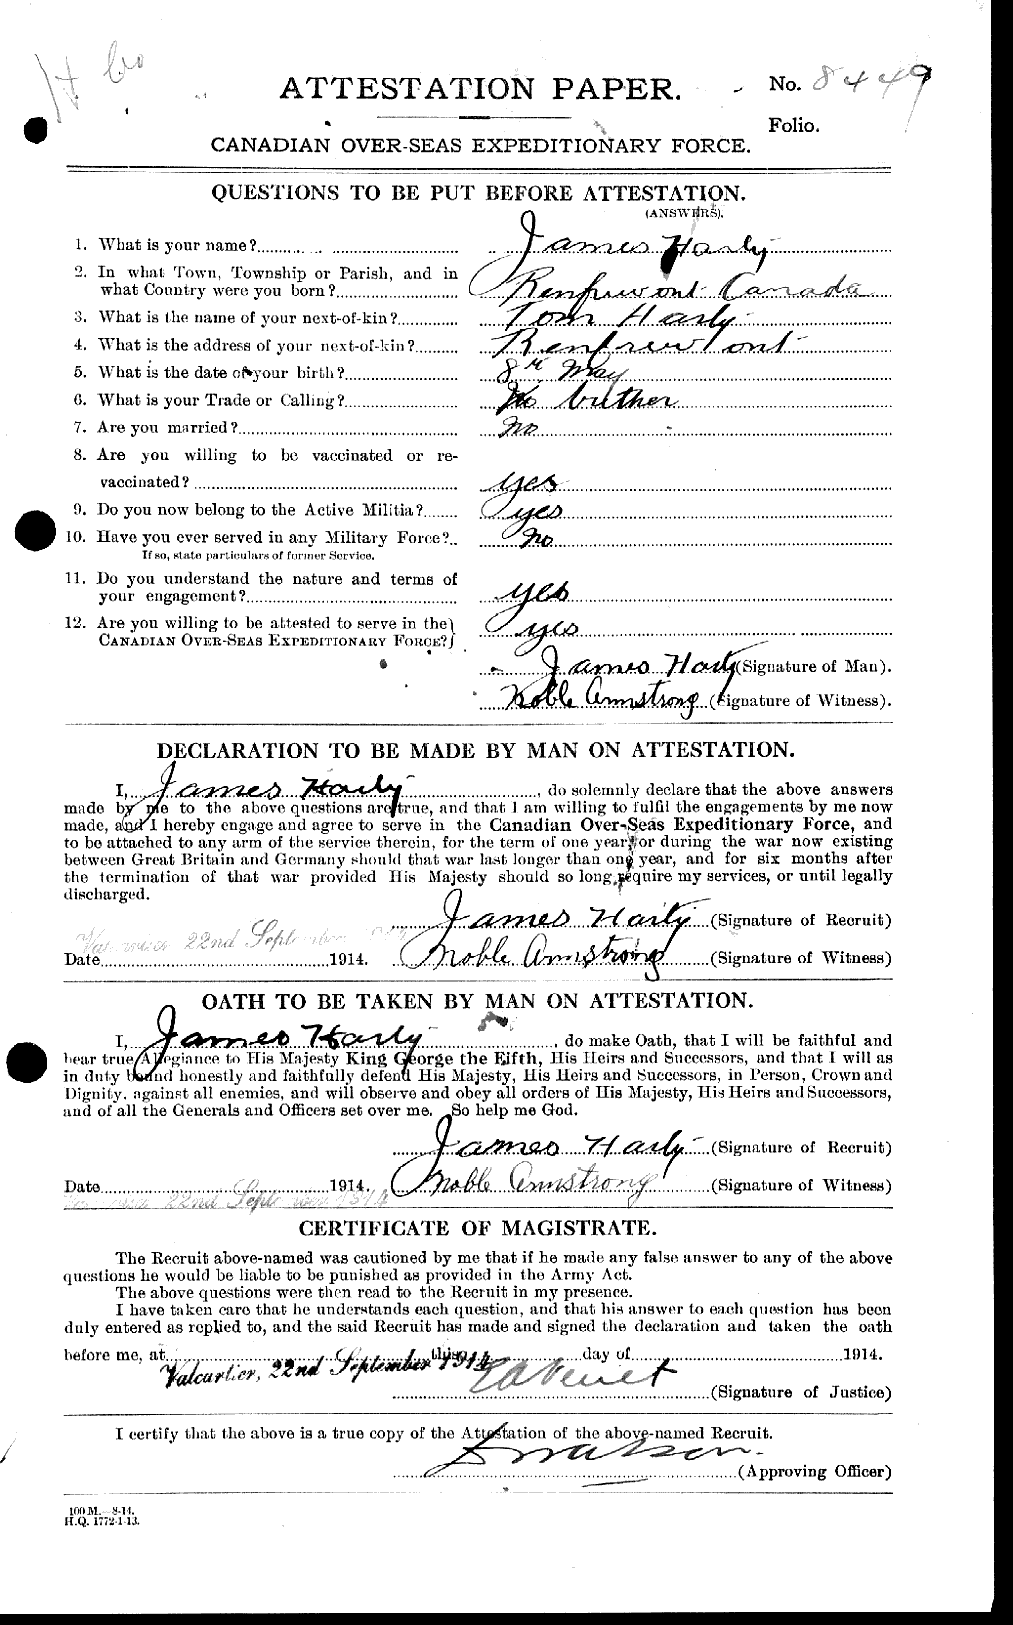 Dossiers du Personnel de la Première Guerre mondiale - CEC 051293a